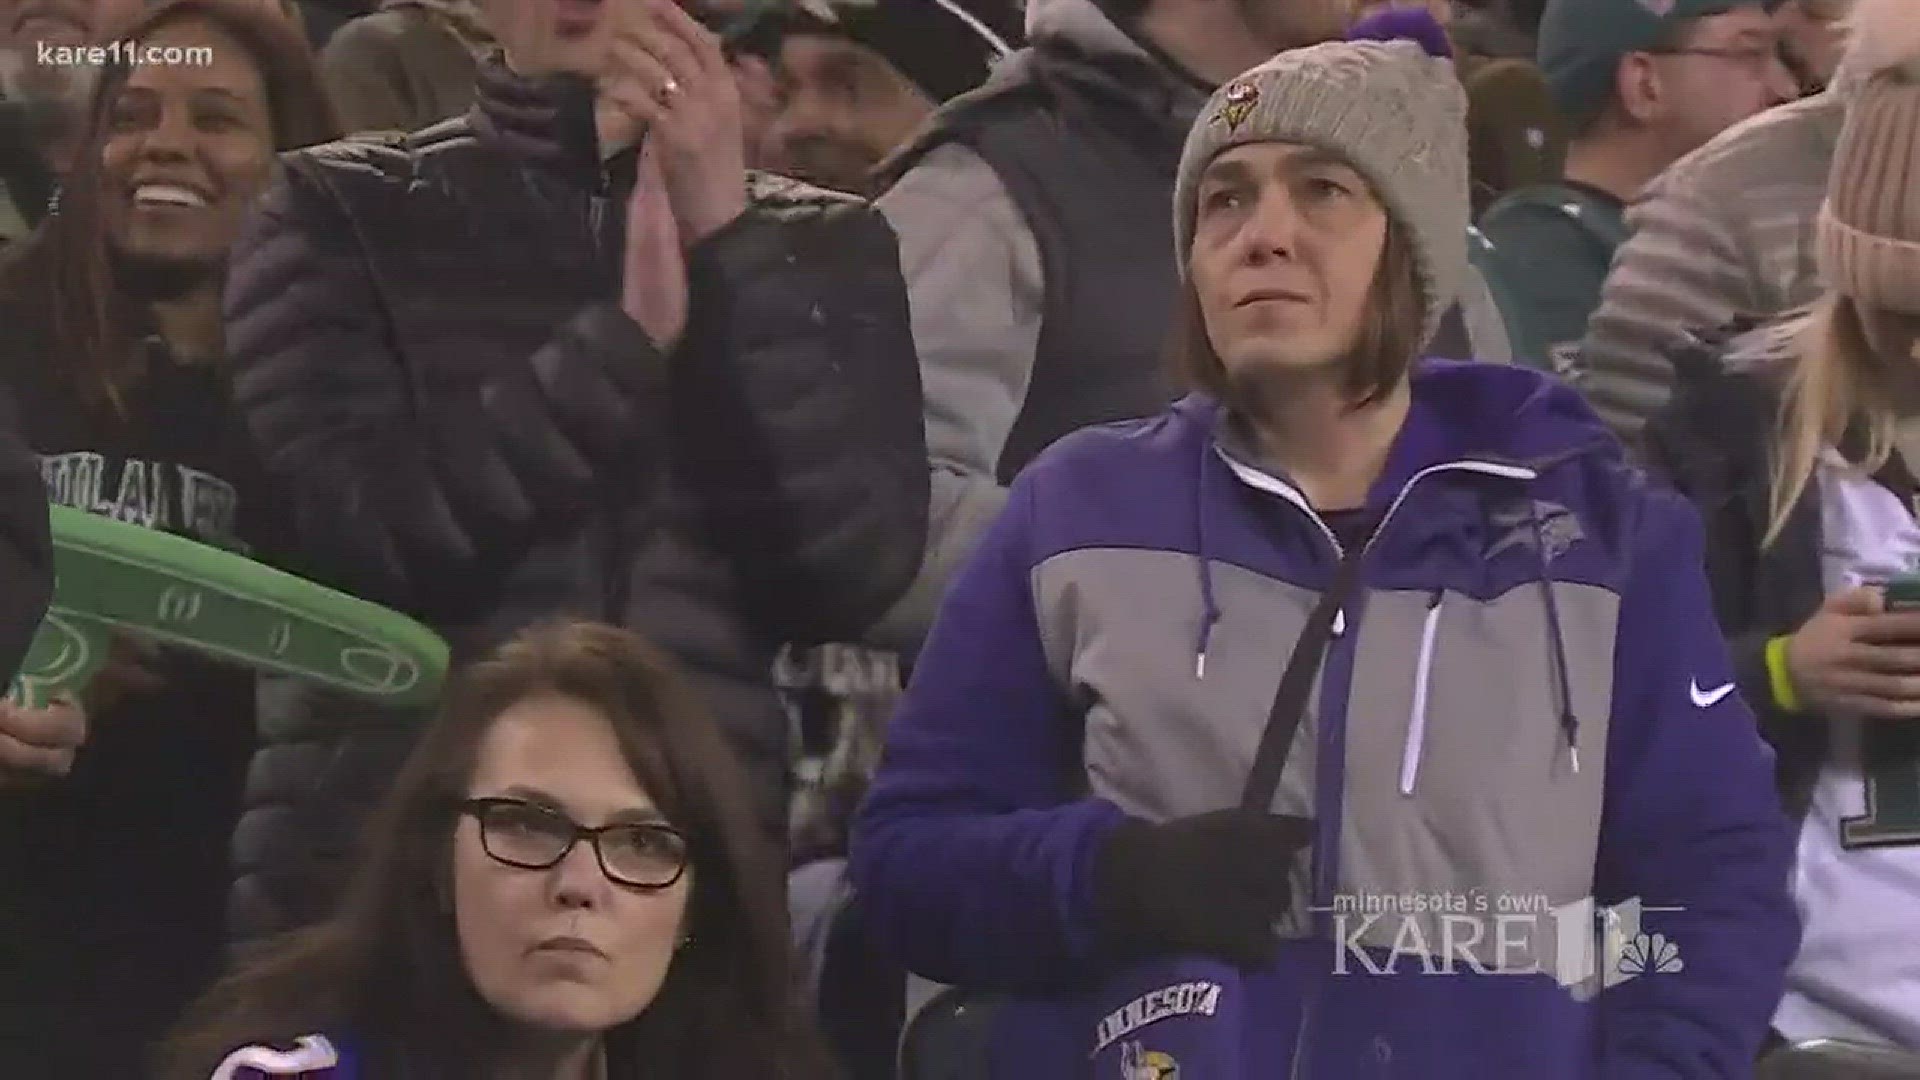 Vikings fans experienced a heartbreaking loss in Philadelphia on Sunday. http://kare11.tv/2DpWWpn